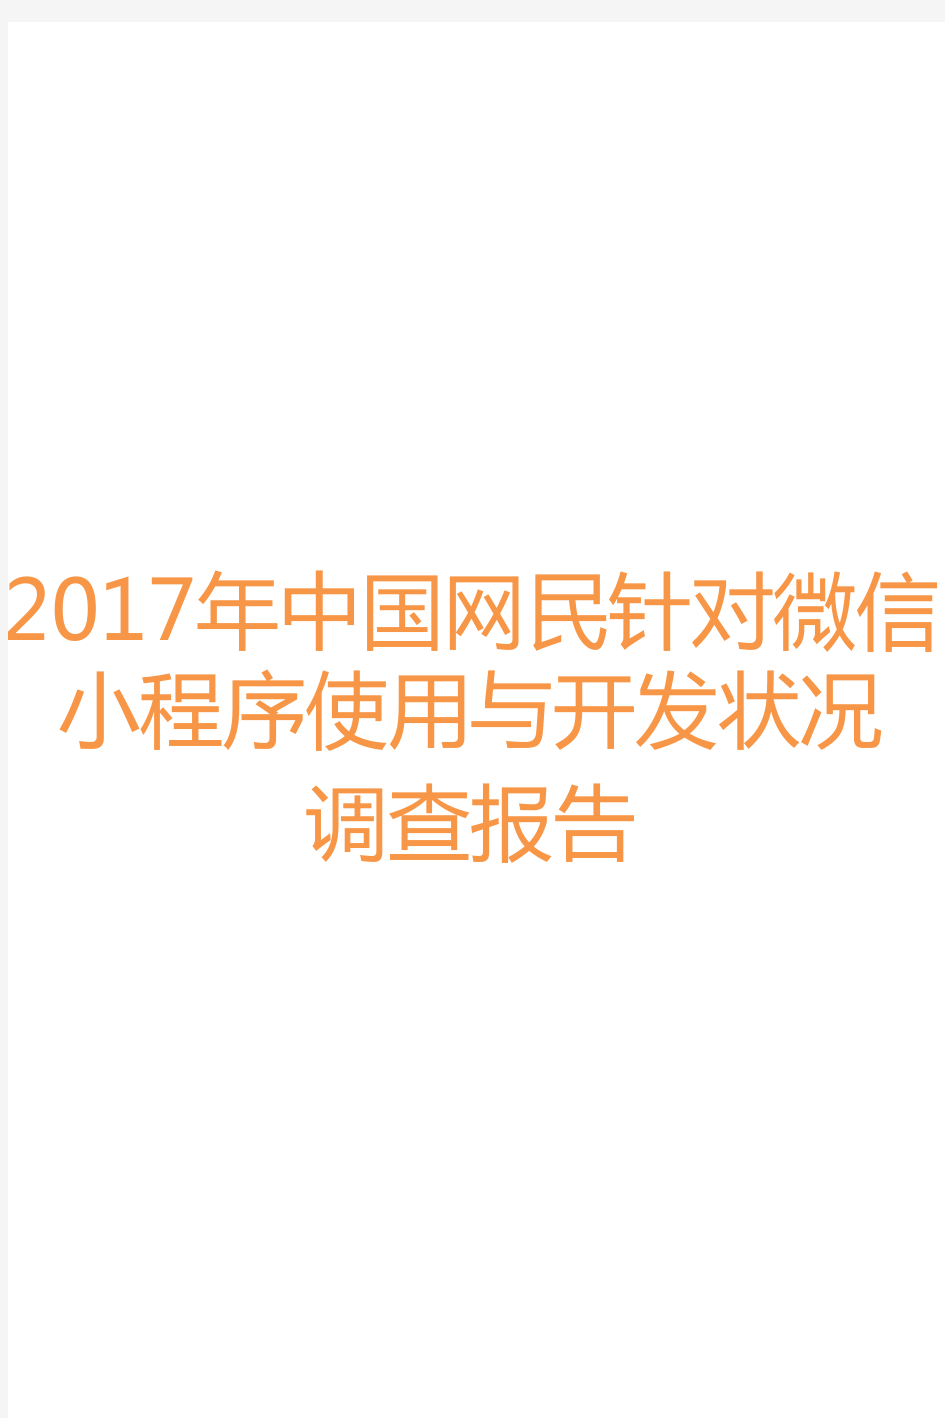 2017年中国网民针对微信小程序使用与开发状况调查报告